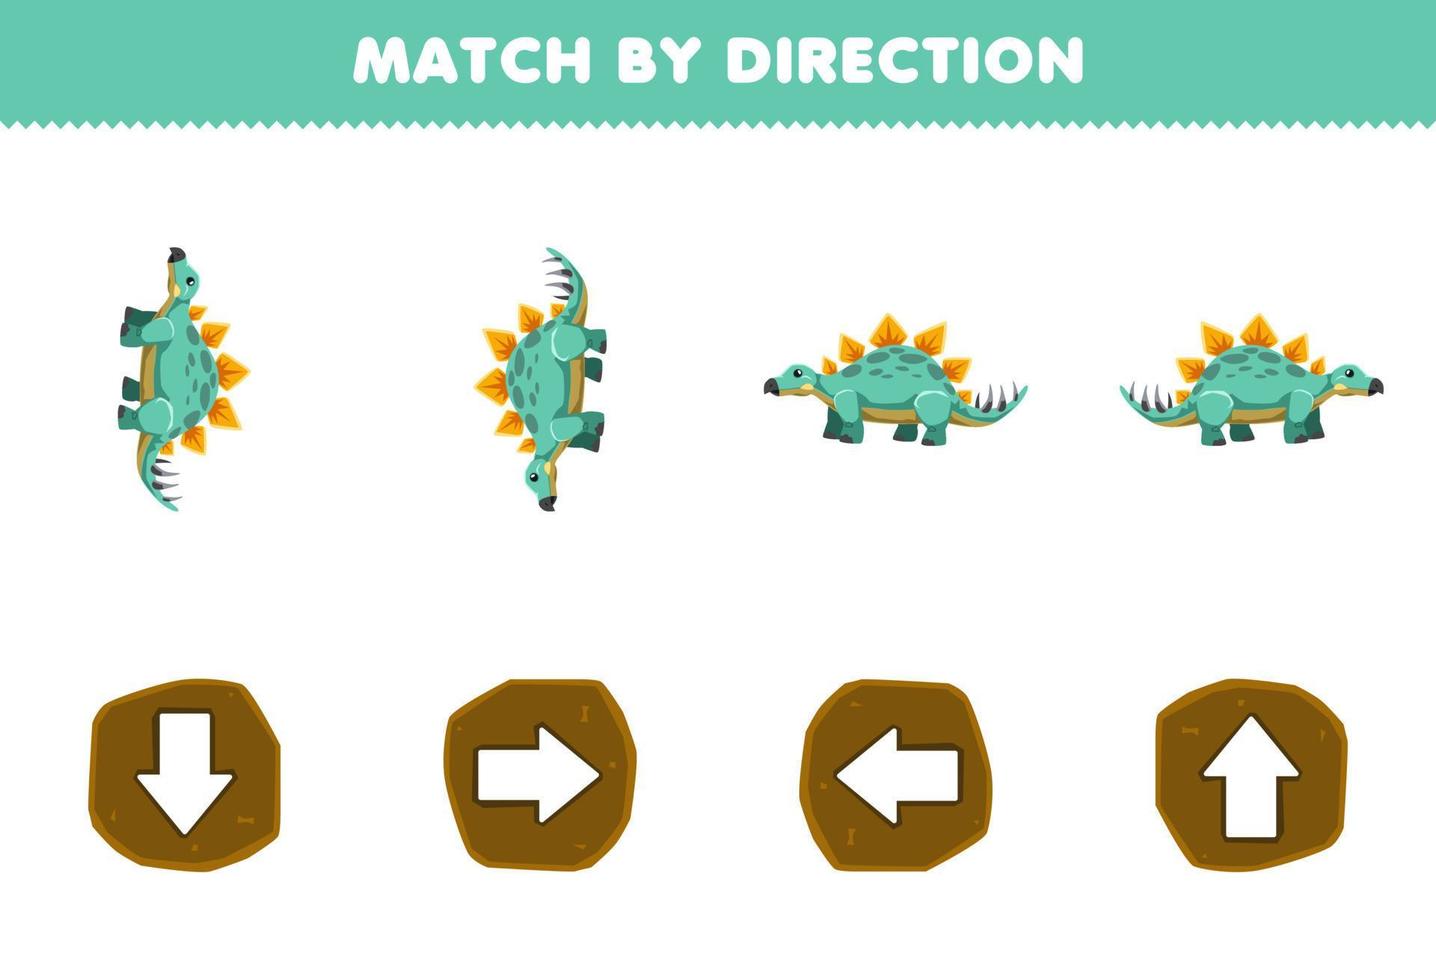 Bildungsspiel für Kinder, Übereinstimmung nach Richtung links, rechts, oben oder unten, Ausrichtung des niedlichen Cartoon-Stegosaurus, druckbares prähistorisches Dinosaurier-Arbeitsblatt vektor